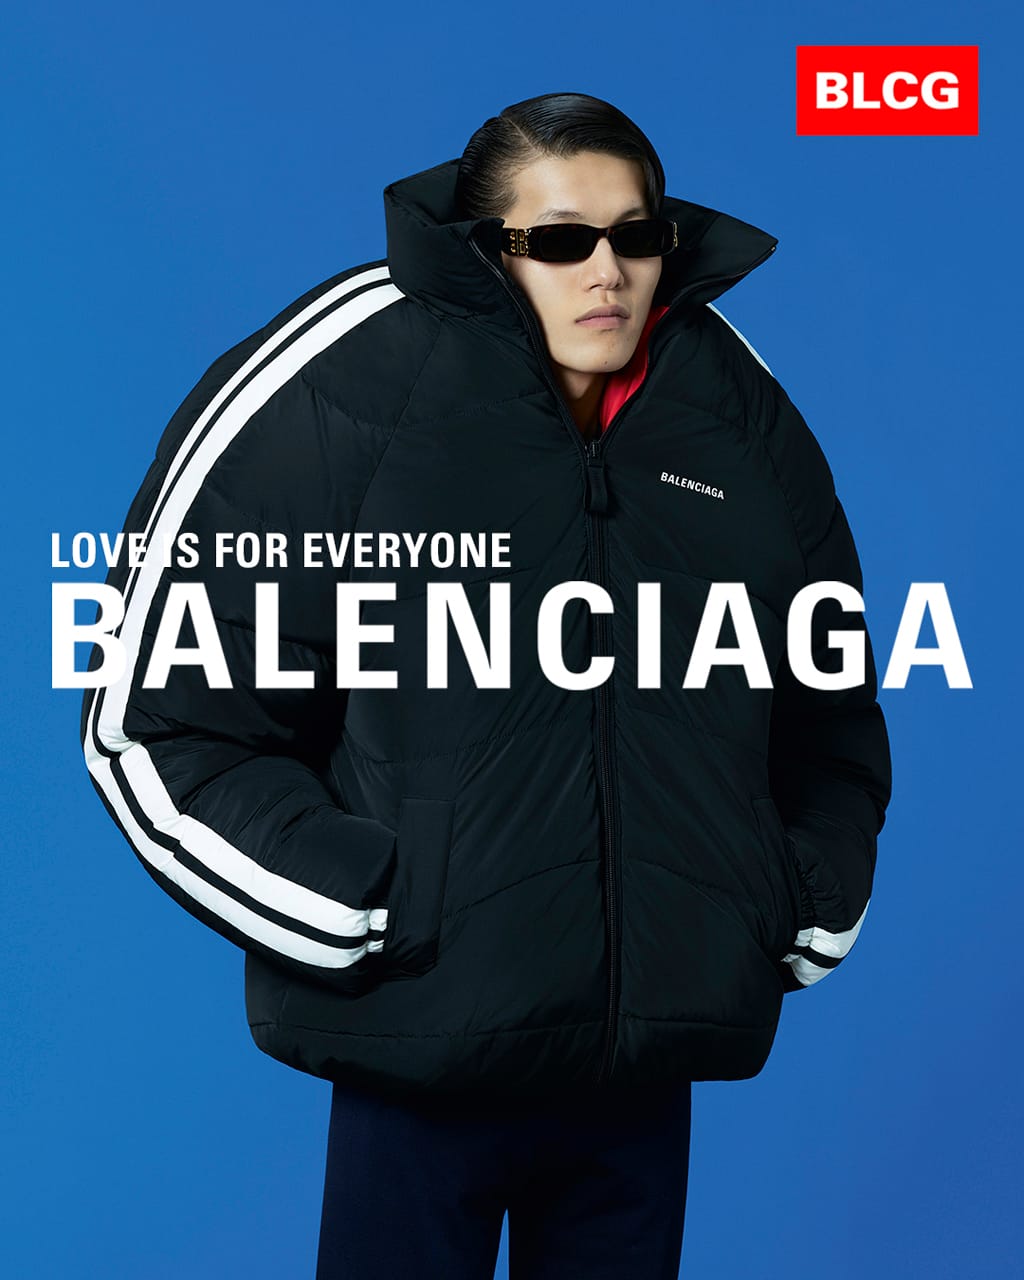 balenciaga love is for everyone